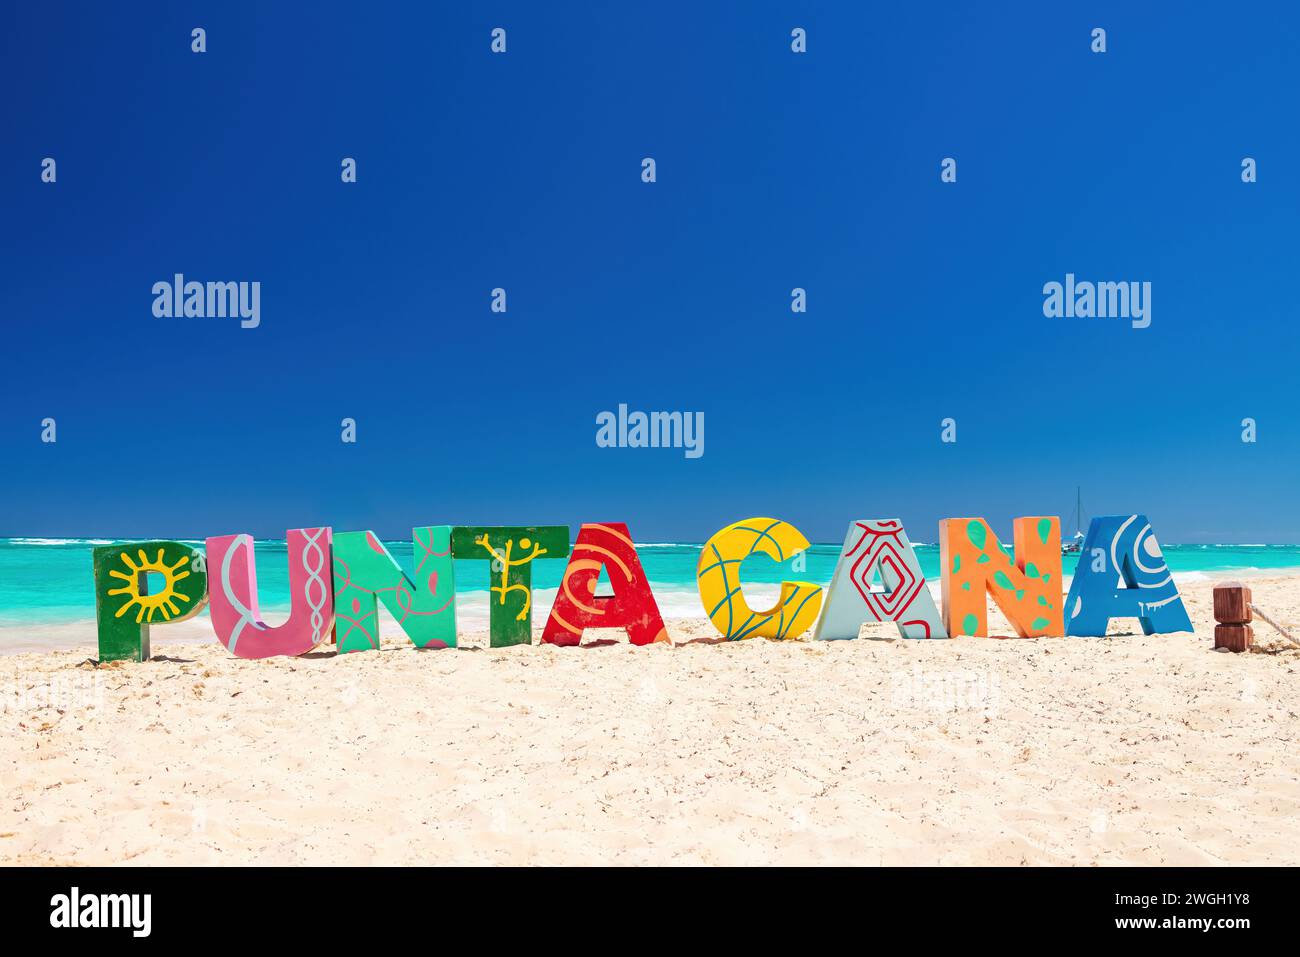 Letras de Punta Cana en la playa de Punta Cana. Texto escrito en la playa del mar Foto de stock